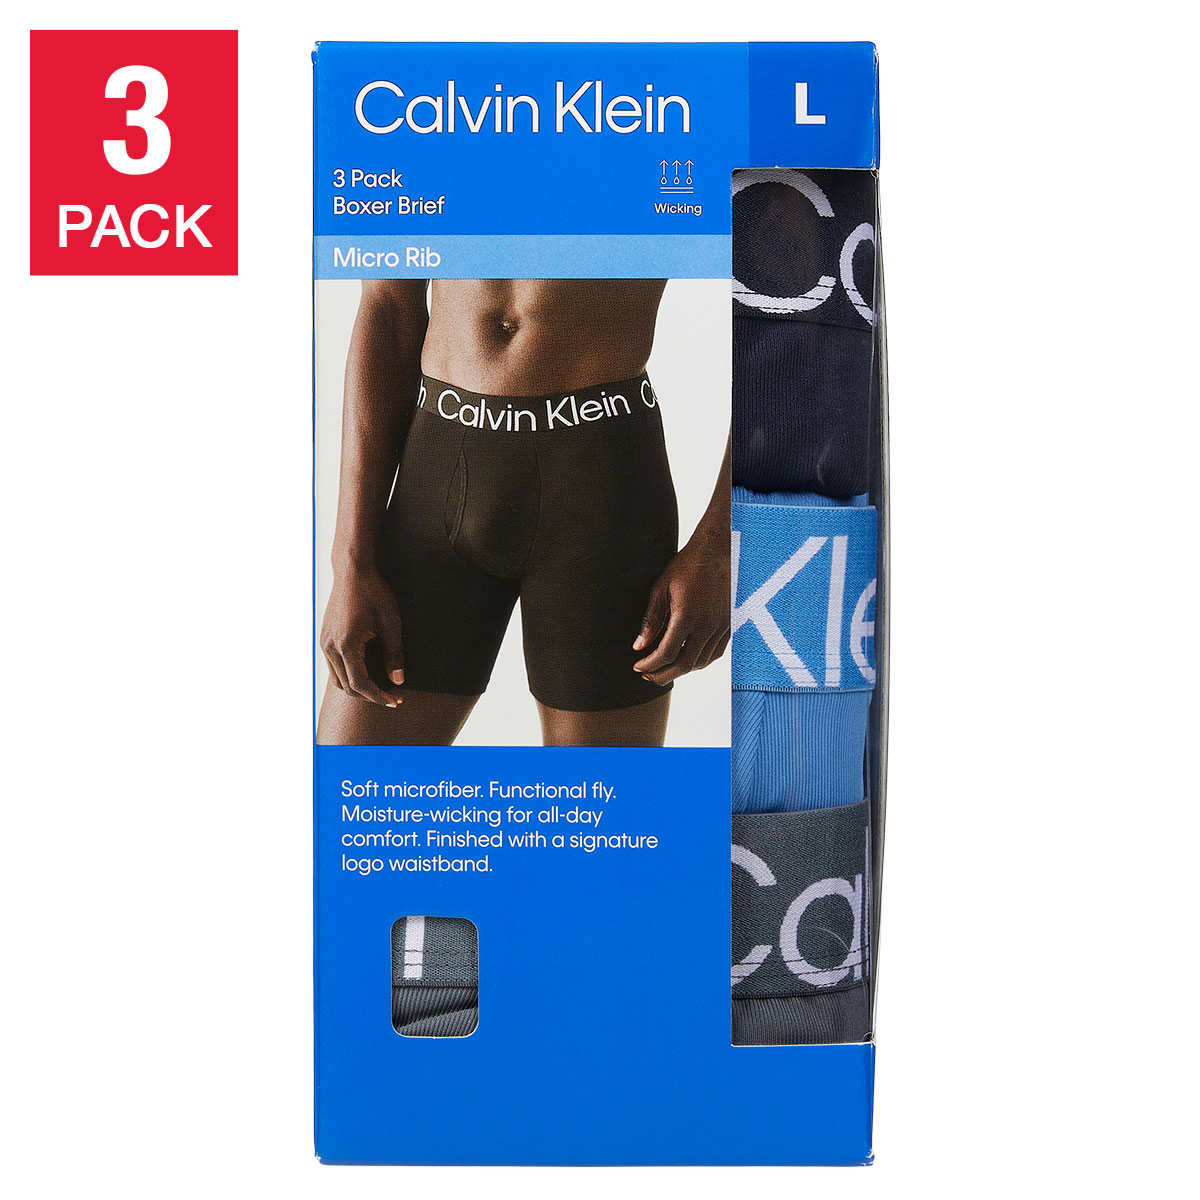 Best Calvin Klein Underwear Deals to Shop from 's Big Spring